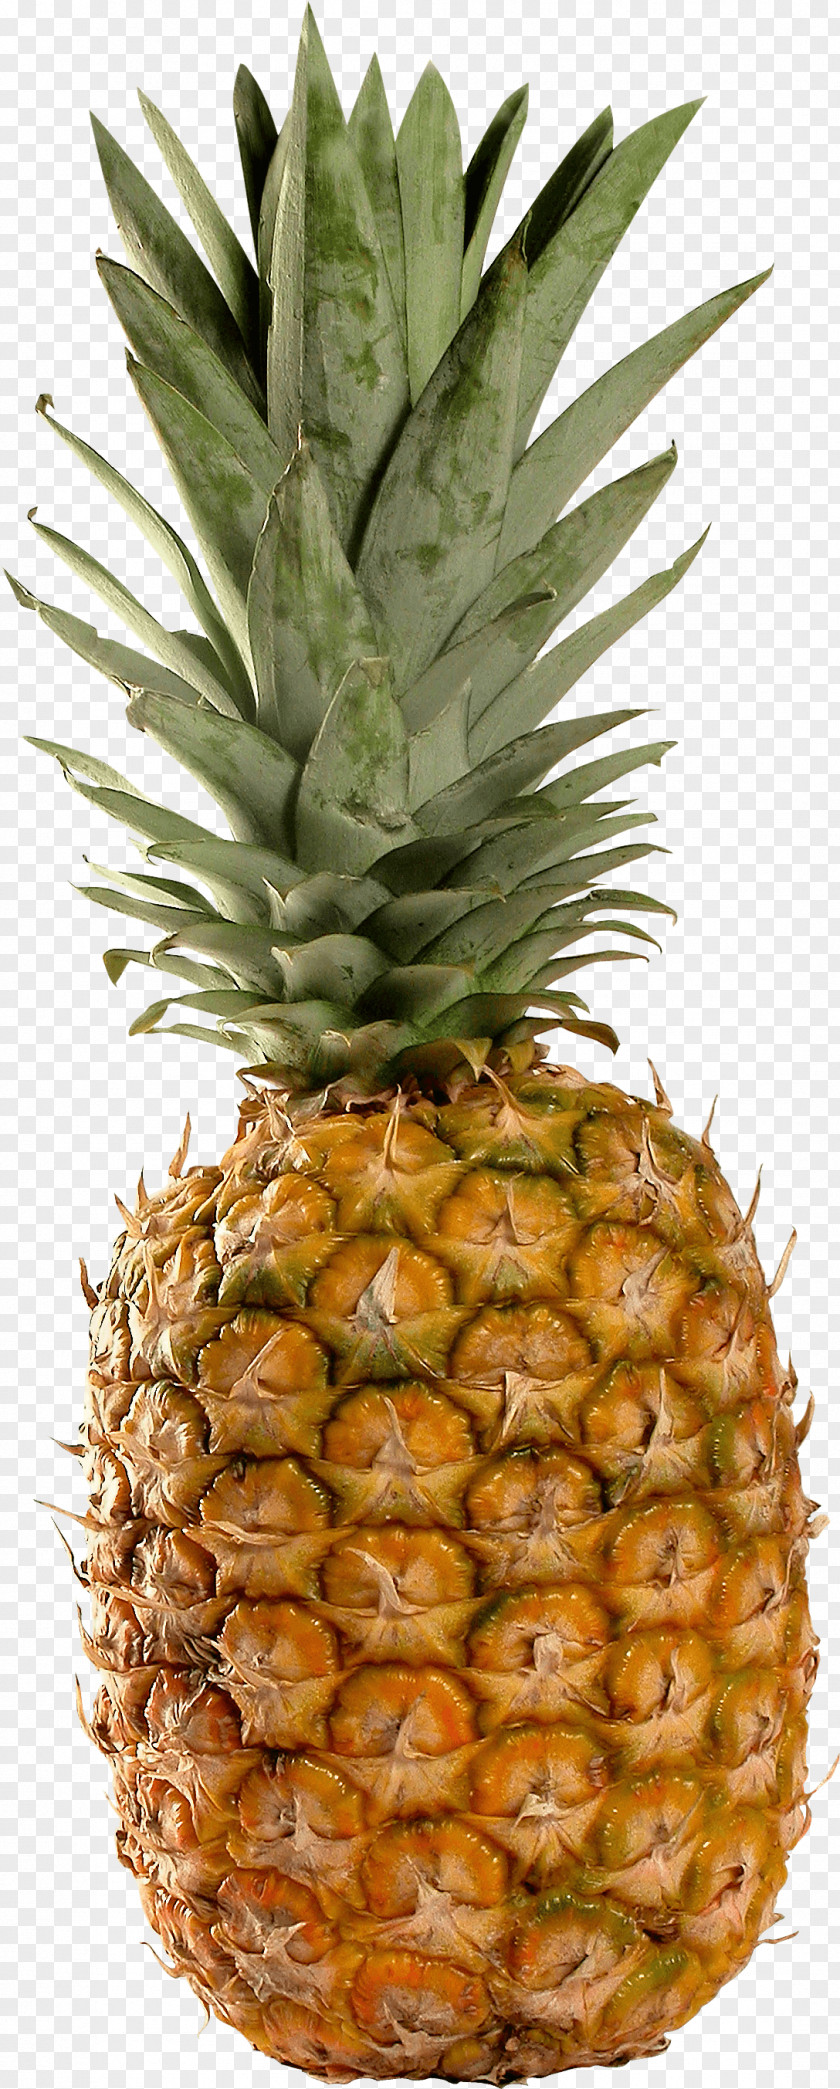 Pineapple Image Download Piña Colada Juice Smoothie Granita PNG